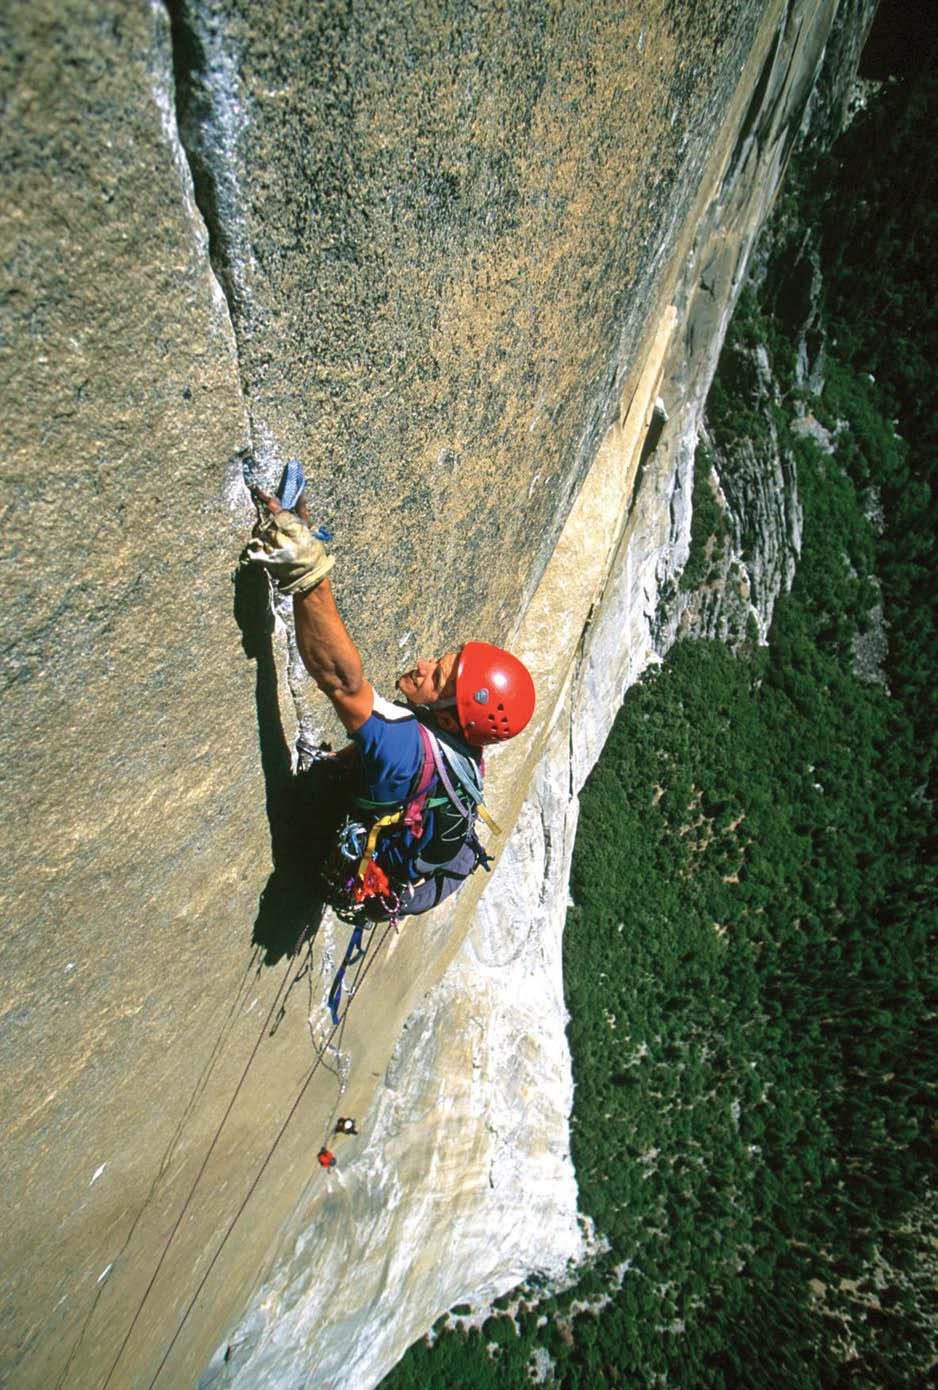  Фото из книги книги «How To Big Wall Climb» Криса МакНамара (Chris McNamara)   